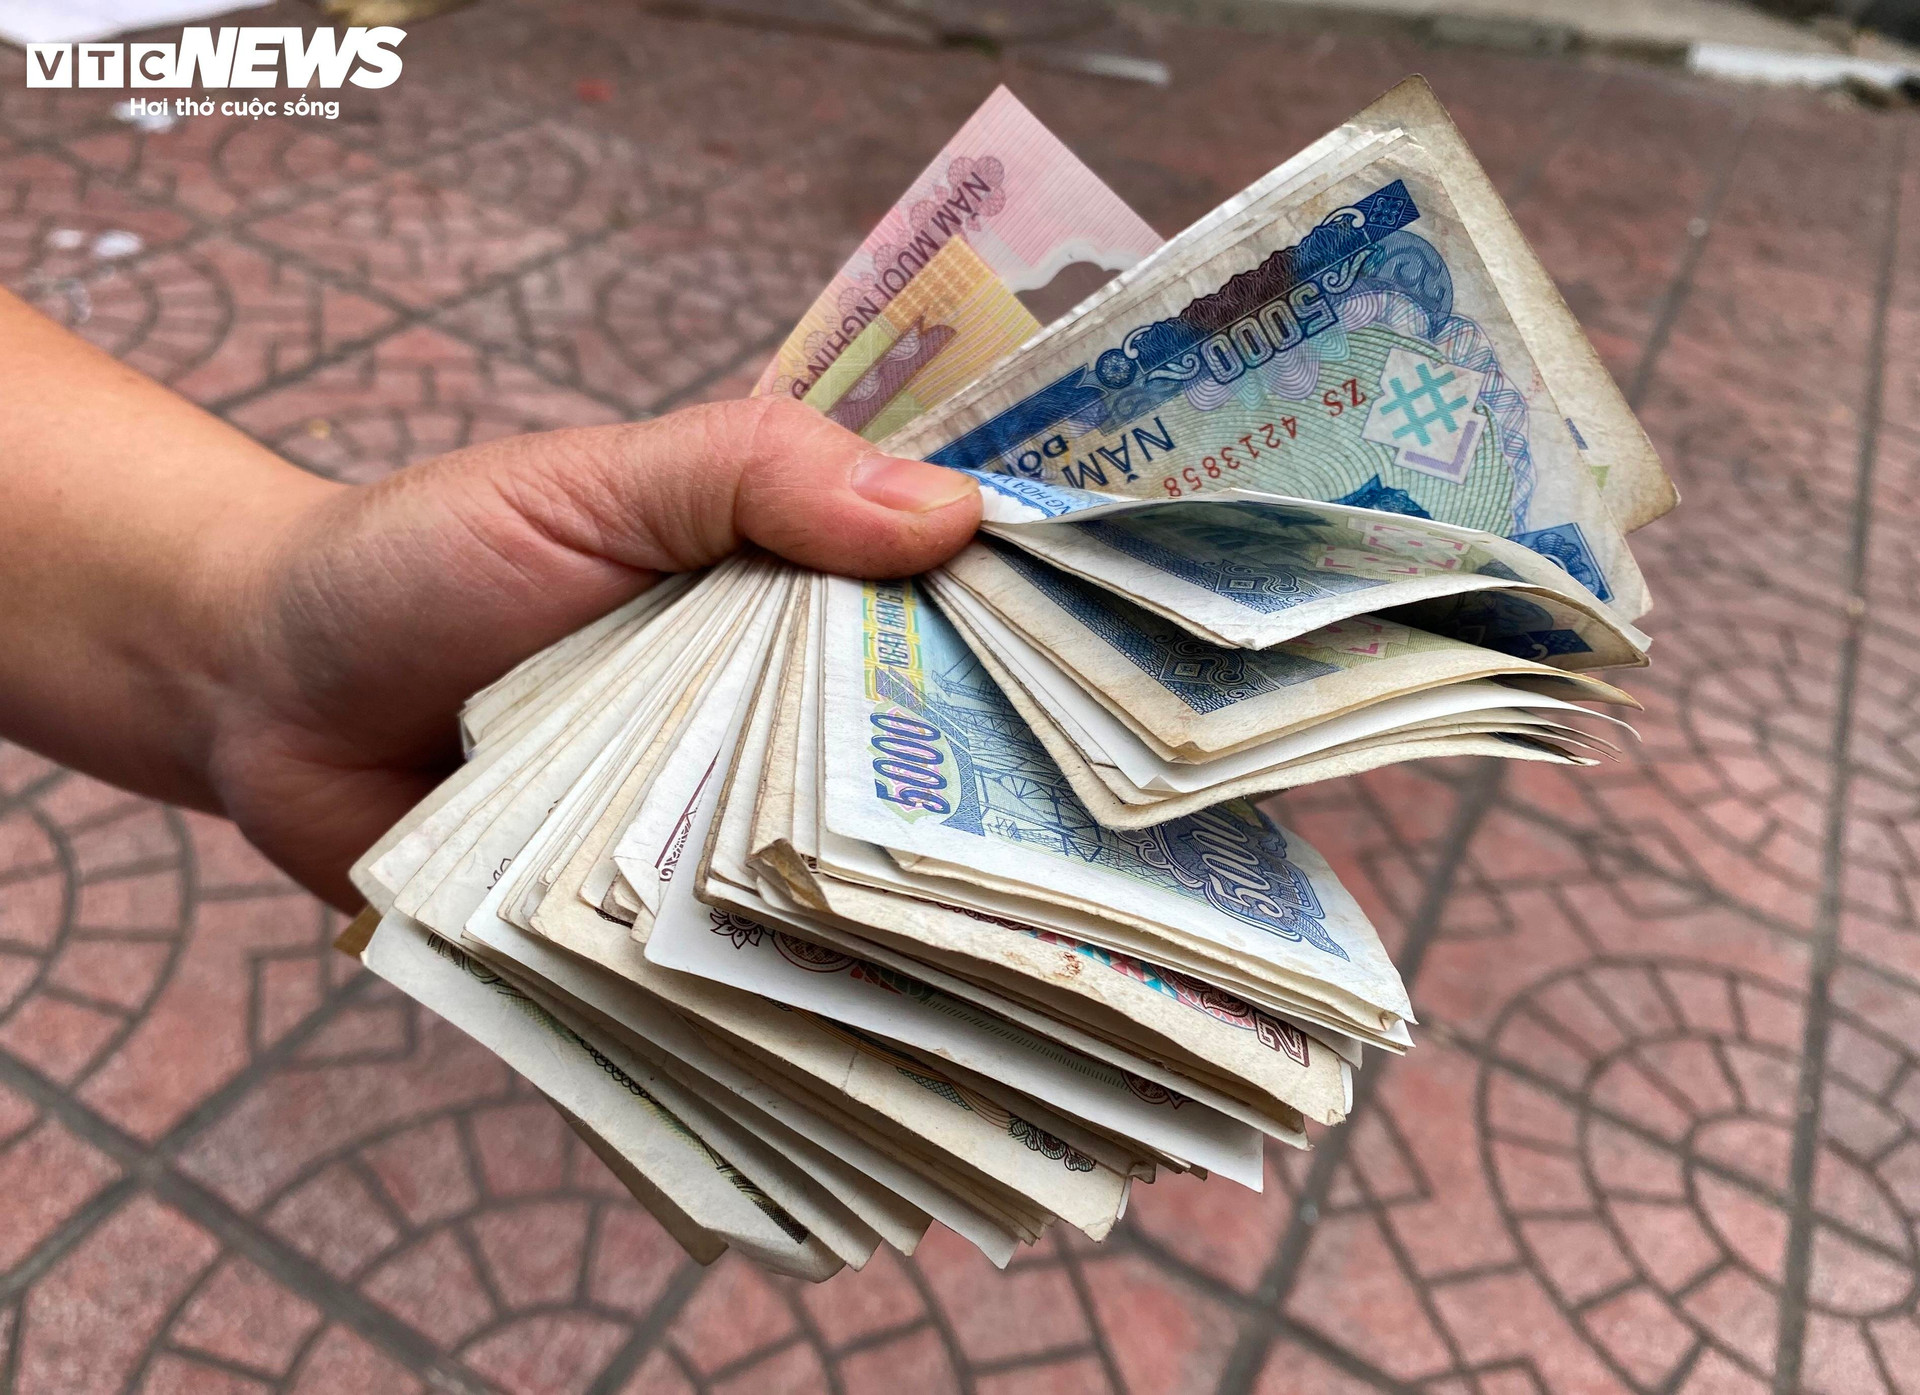 Chị Hường khoe nắm tiền lẻ trên tay và cho biết không có bất kỳ tờ tiền nào mệnh giá dưới 1.000 đồng.